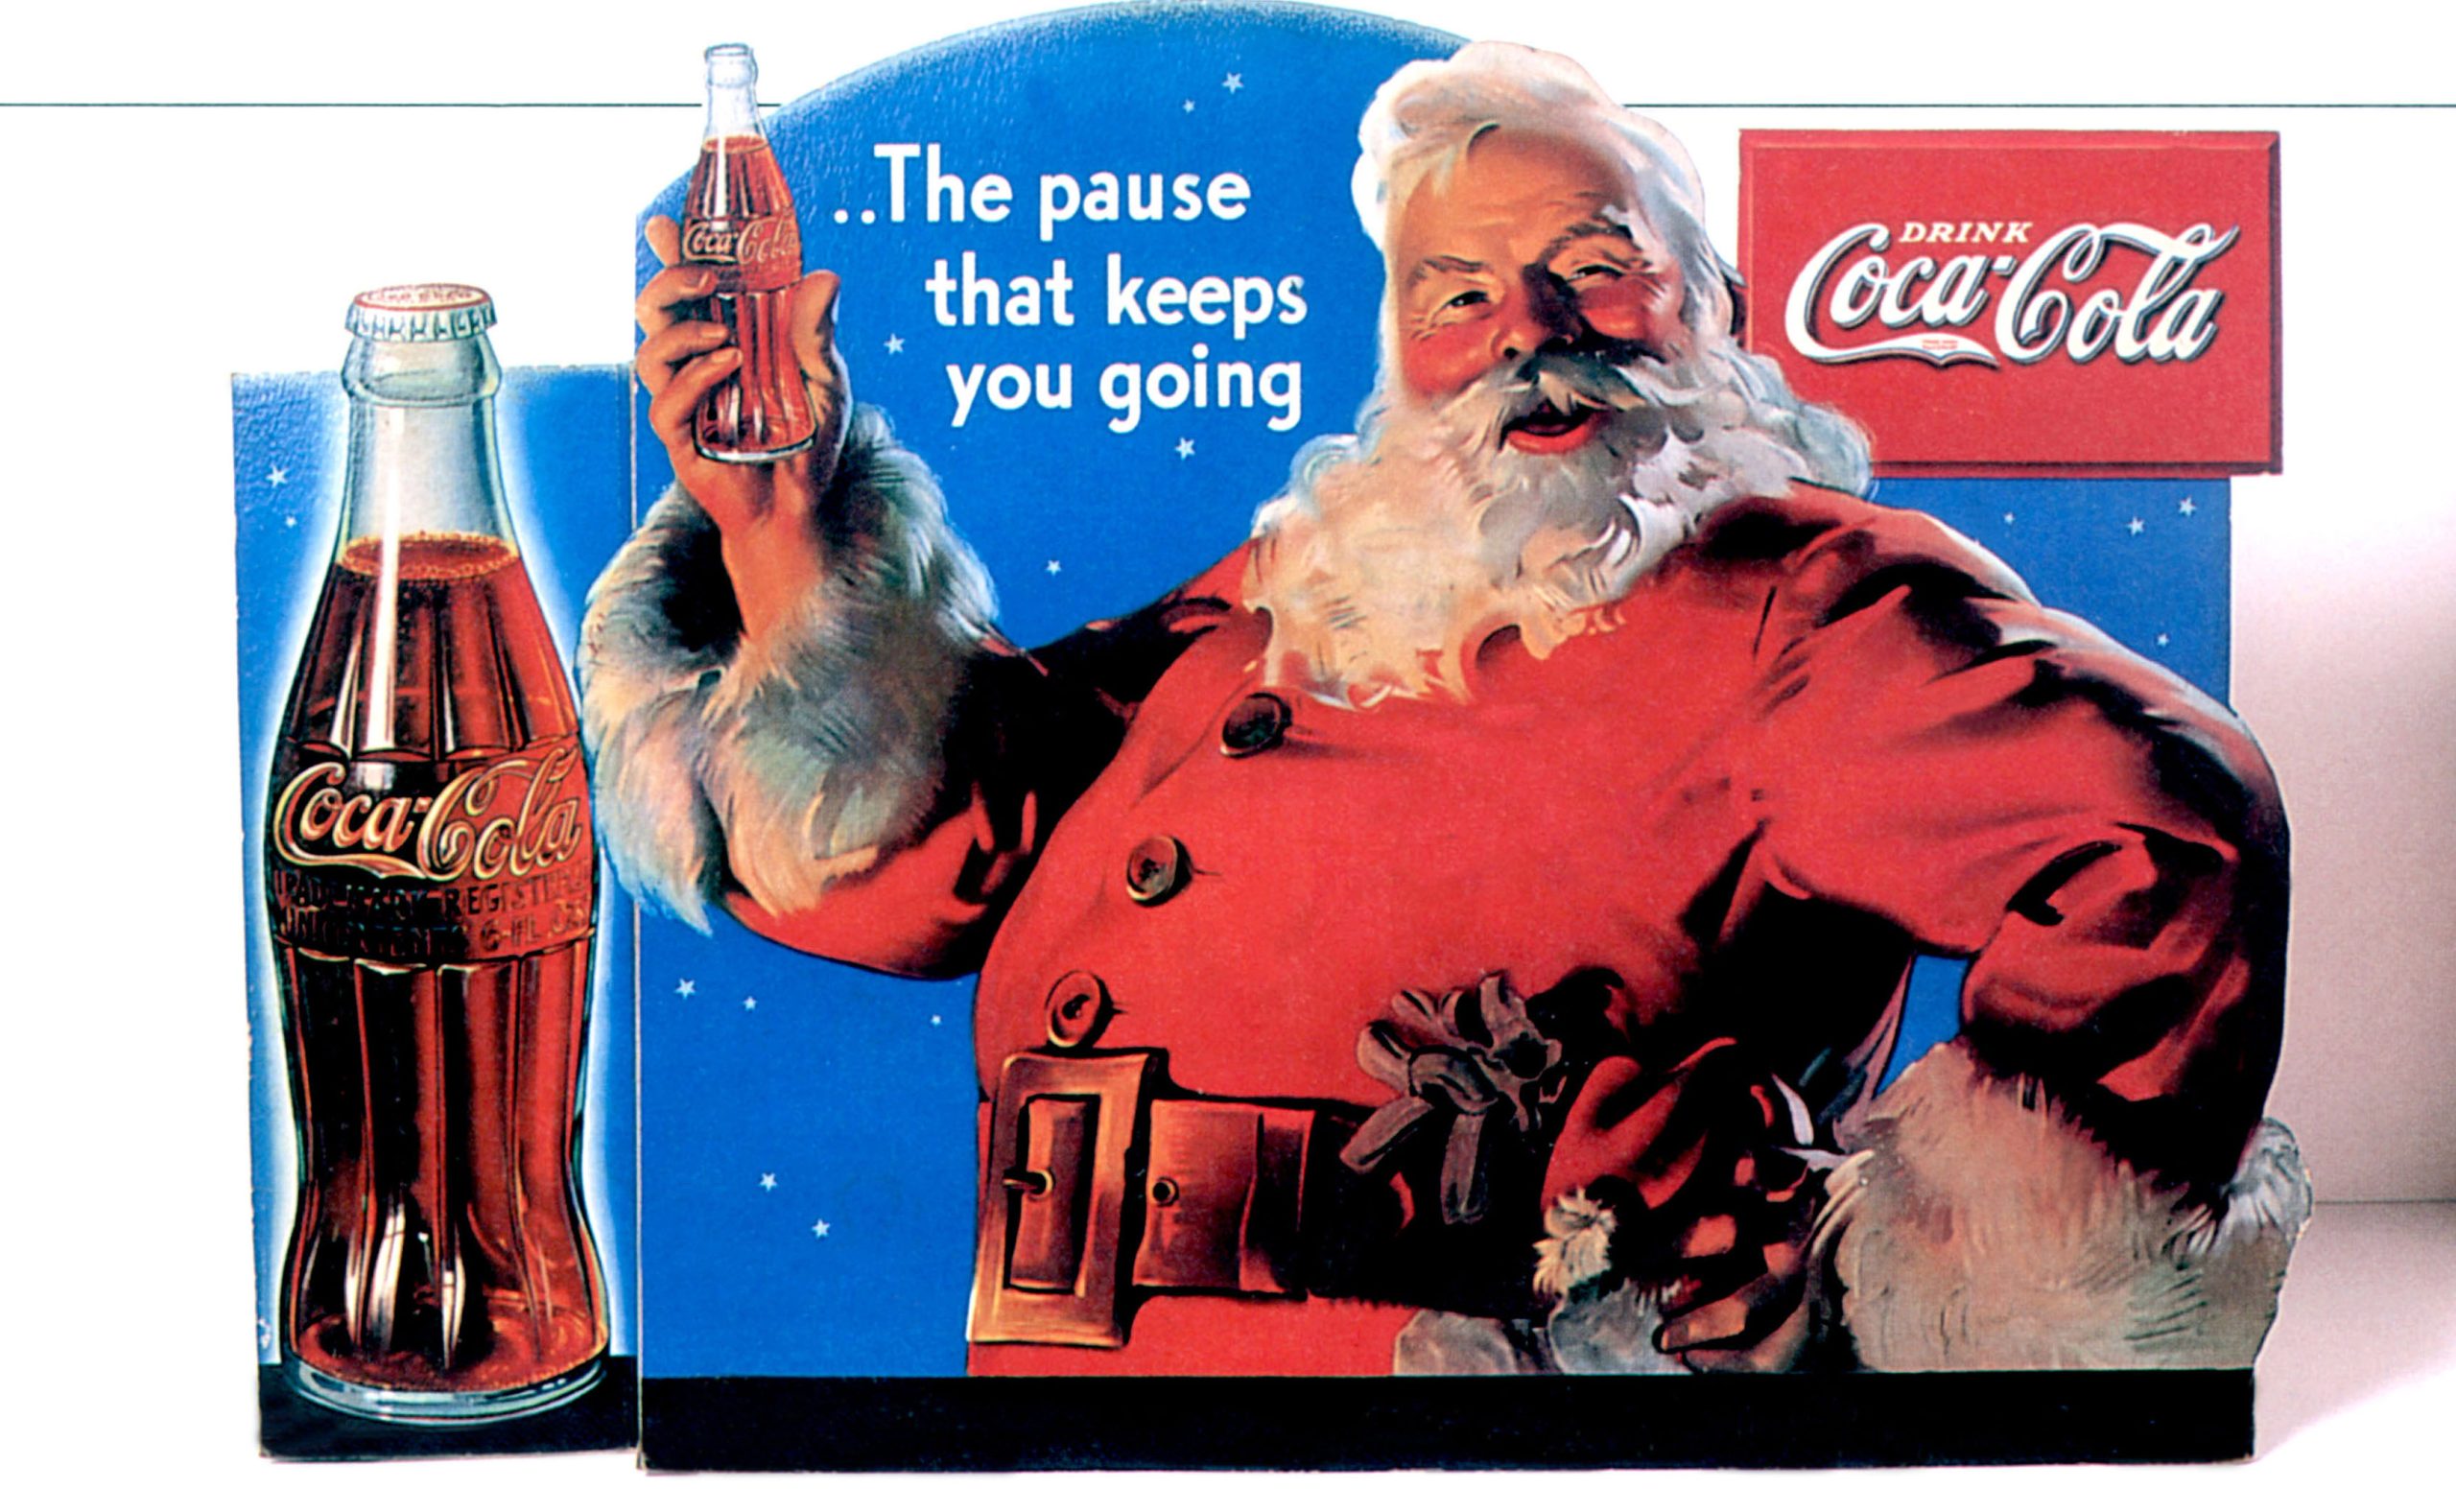 Coca-Cola ông già Noel là biểu tượng không thể thiếu trong mùa Giáng sinh năm nay. Hình ảnh Ông già Noel mặc đồ đỏ cùng cốc Coca-Cola giúp bạn thấy rõ sự kết hợp tuyệt vời của hai yếu tố này. Hãy để nghe vị giác của bạn khiến bạn đắm chìm trong không khí Noel đấy.